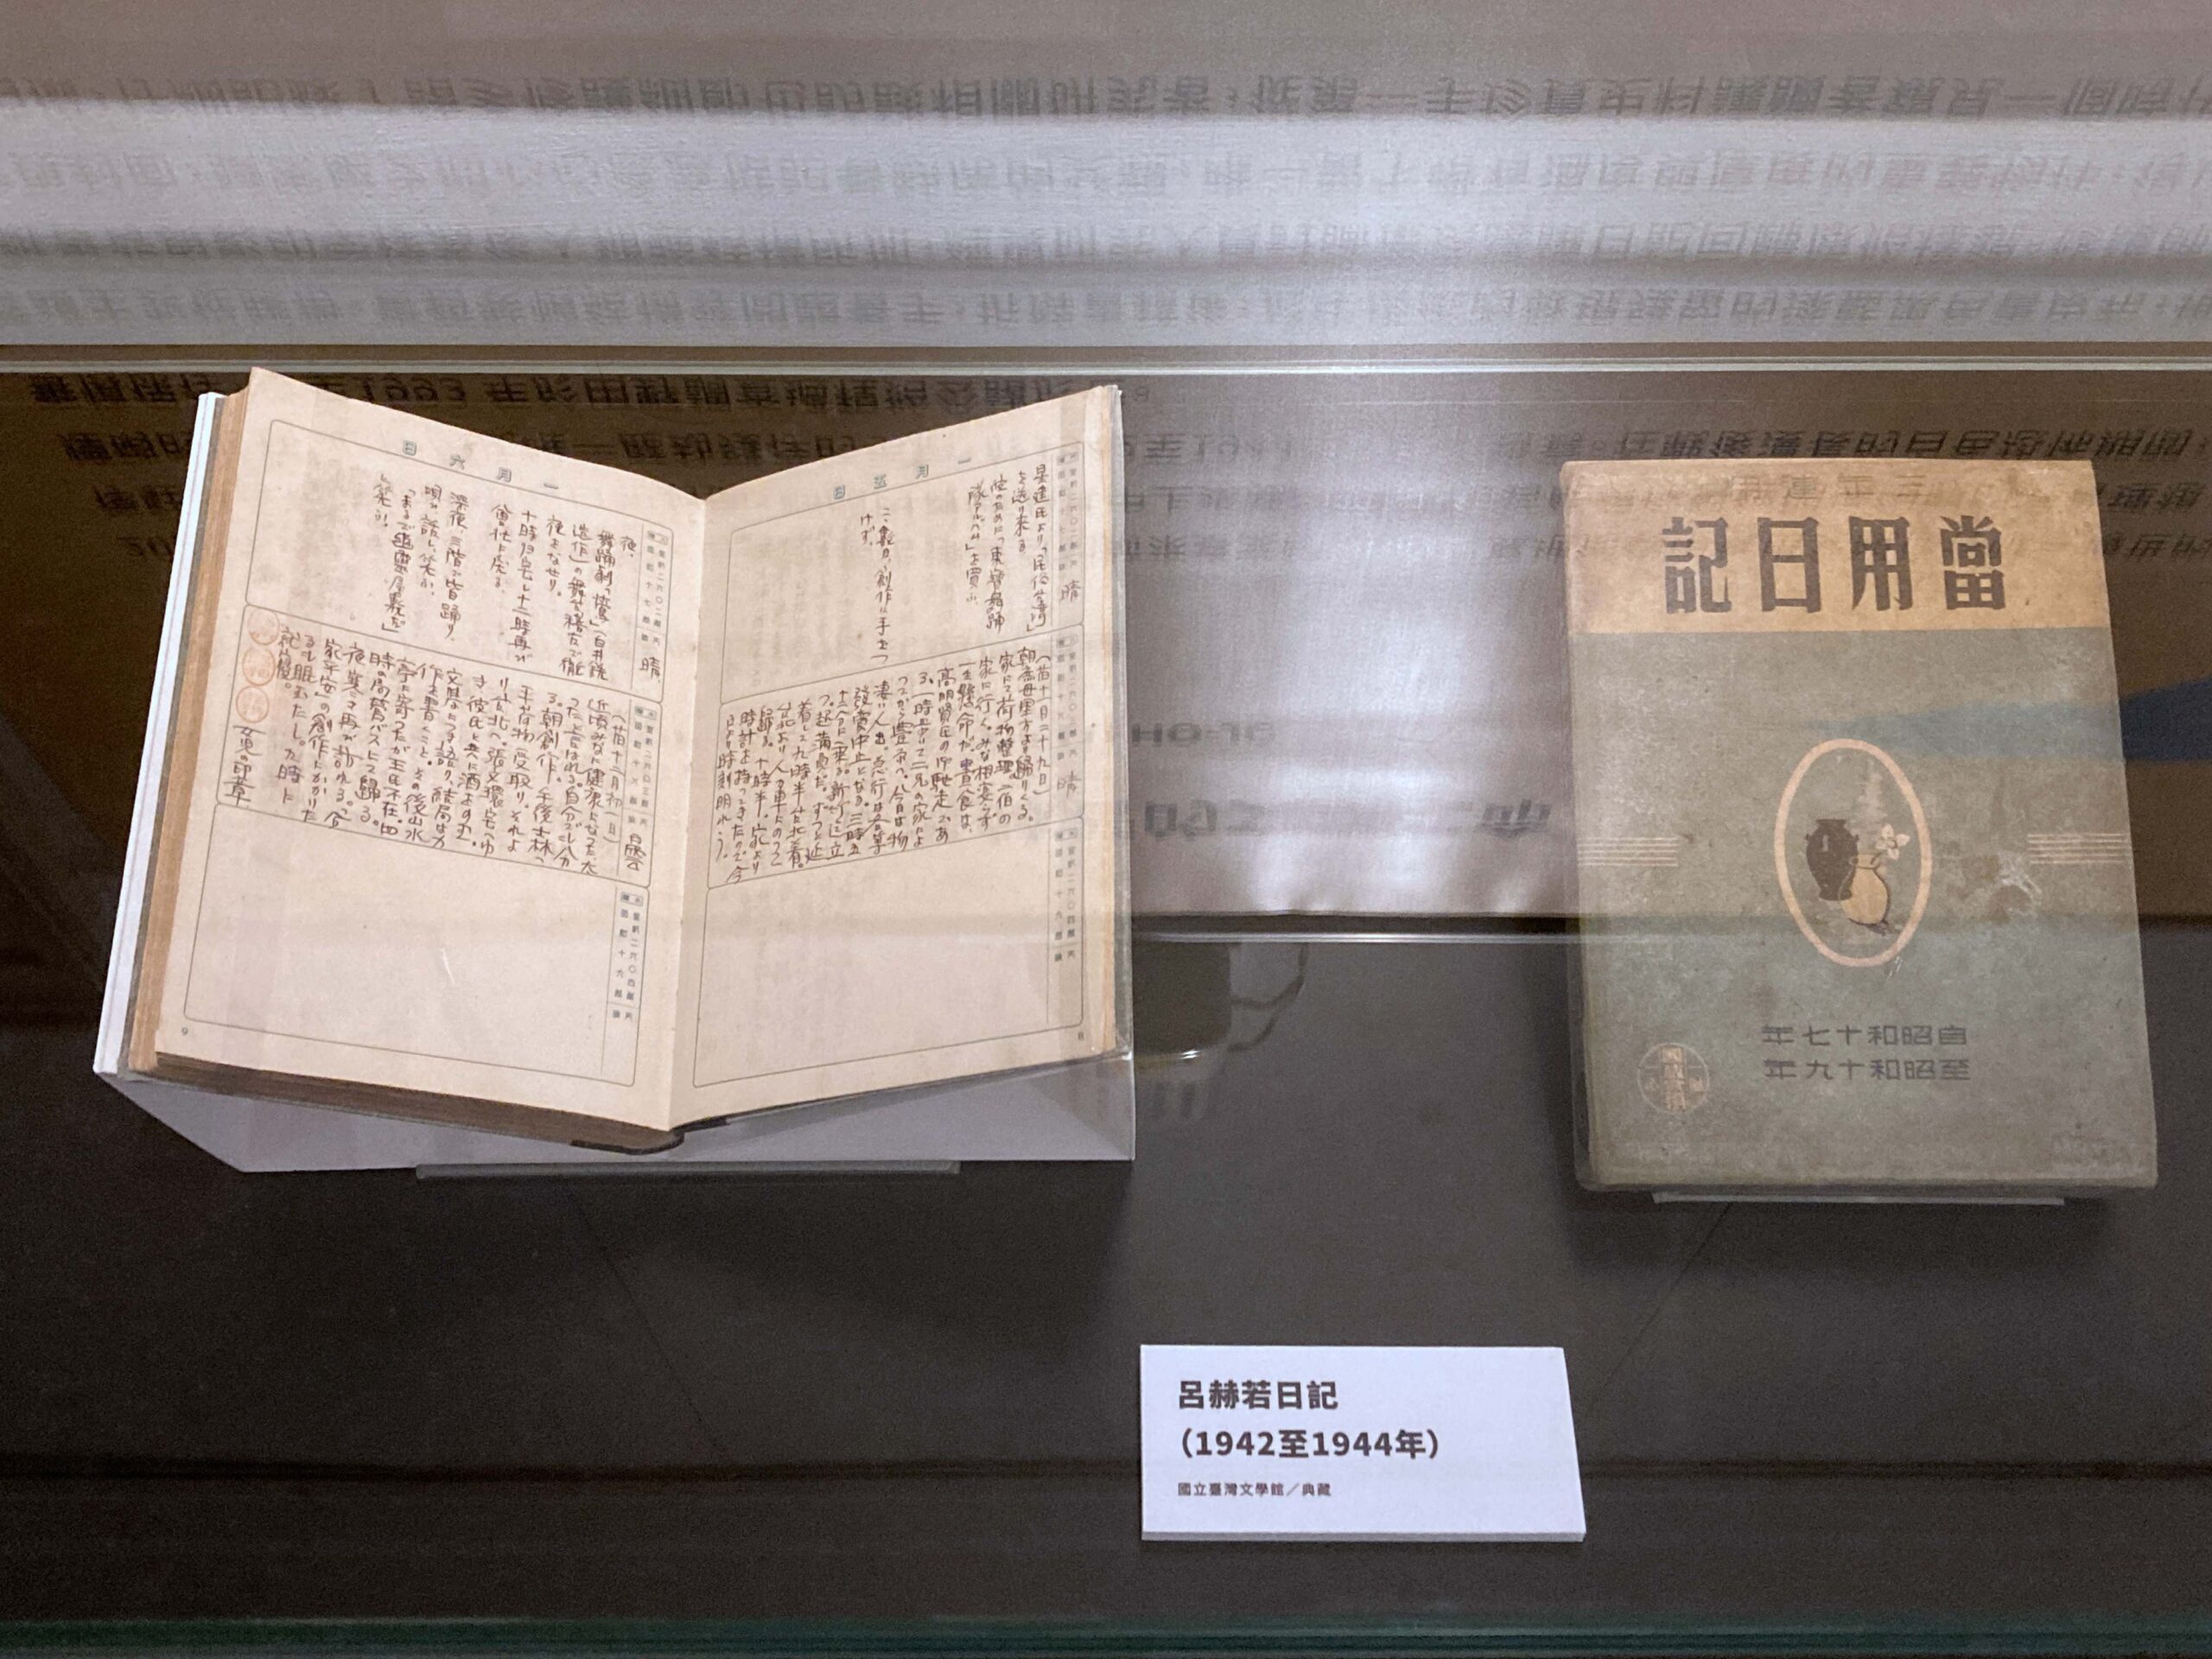 ▲修護後的《呂赫若日記》於臺文館展覽室E展出。(圖/文化部提供)